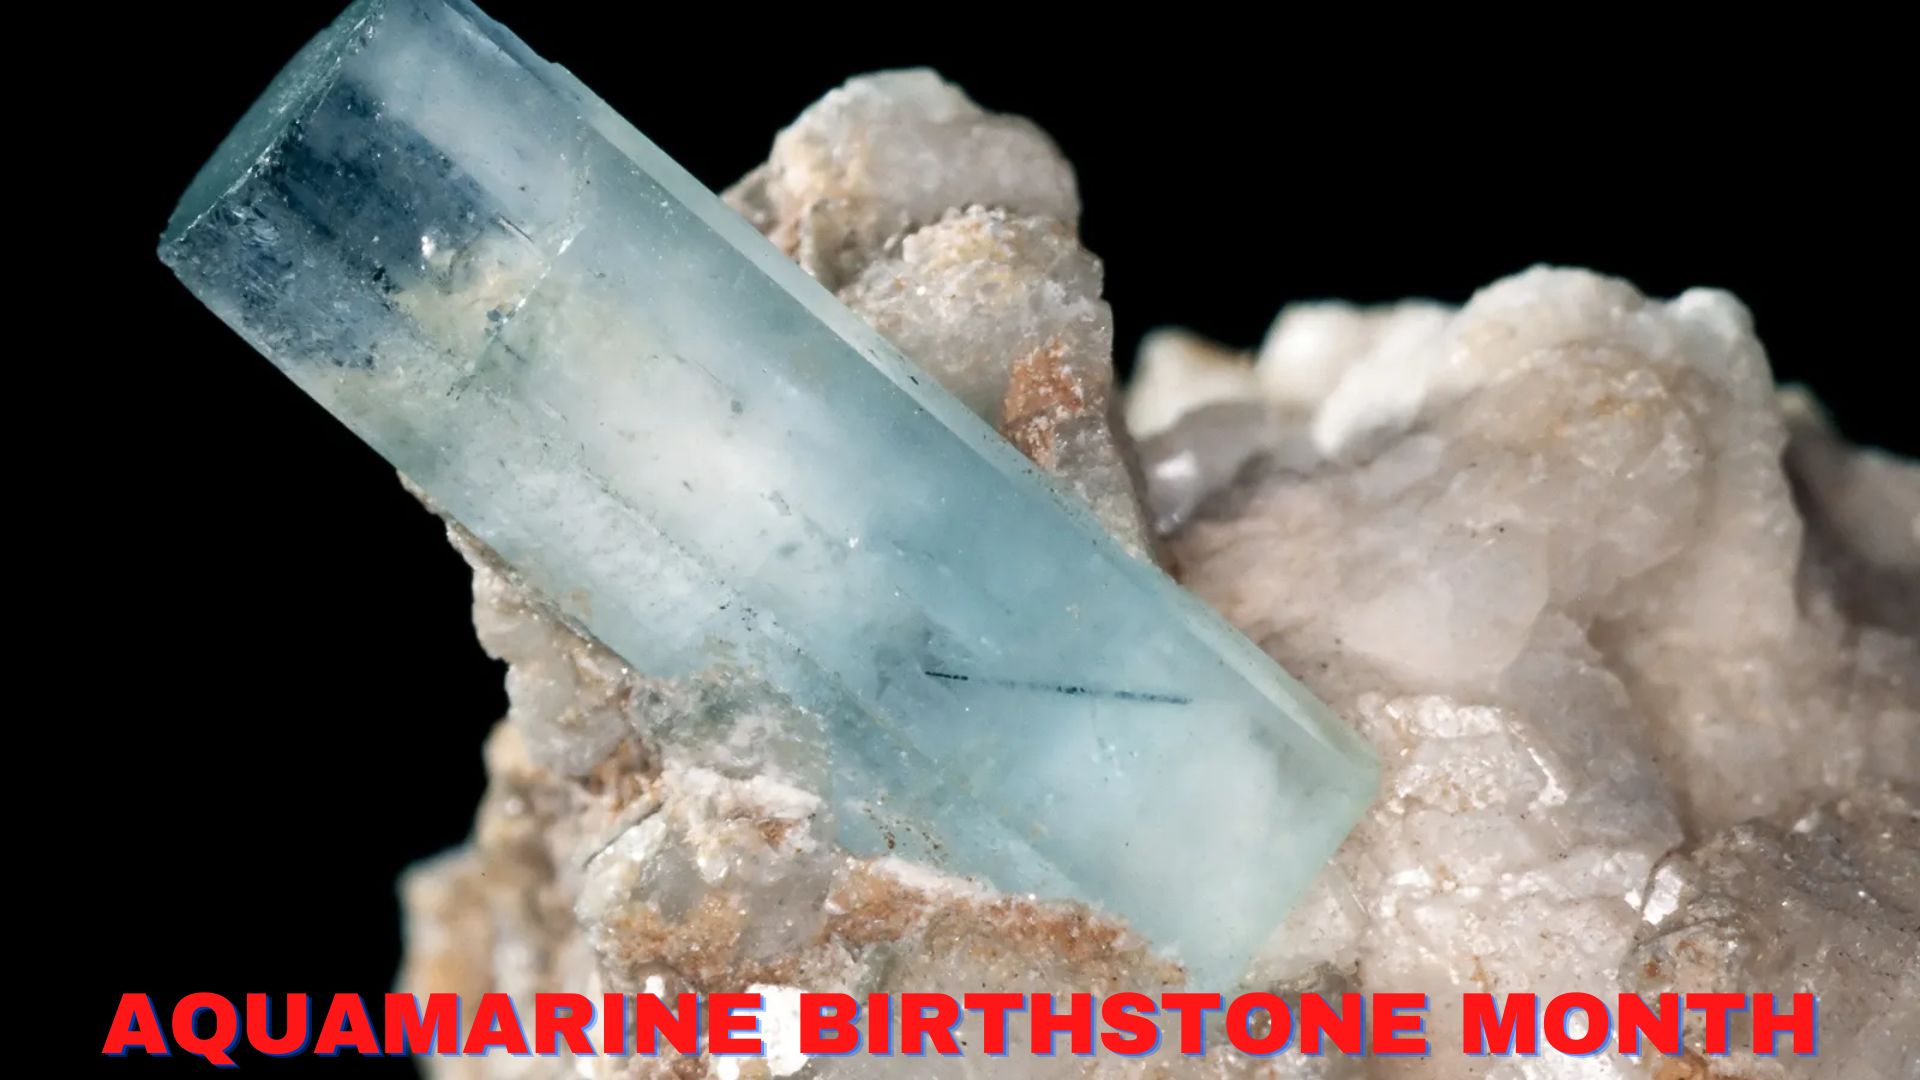 Aquamarine Birthstone Month - A March Birthstone